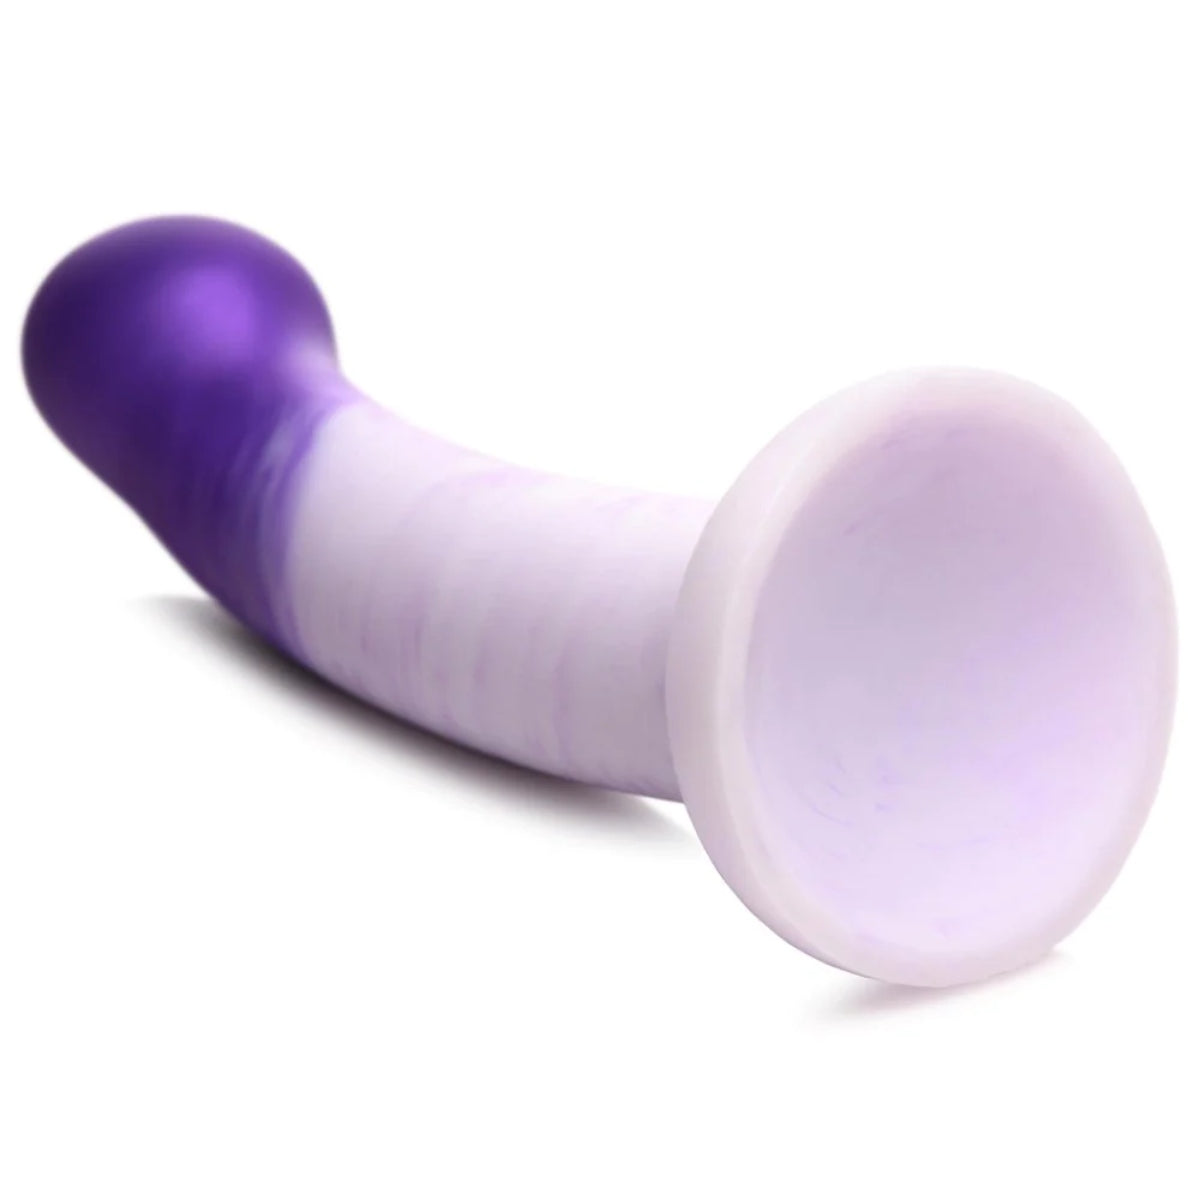 Strap U G-Swirl G-Spot Silicone Dildo Purple White 6.9 Inch